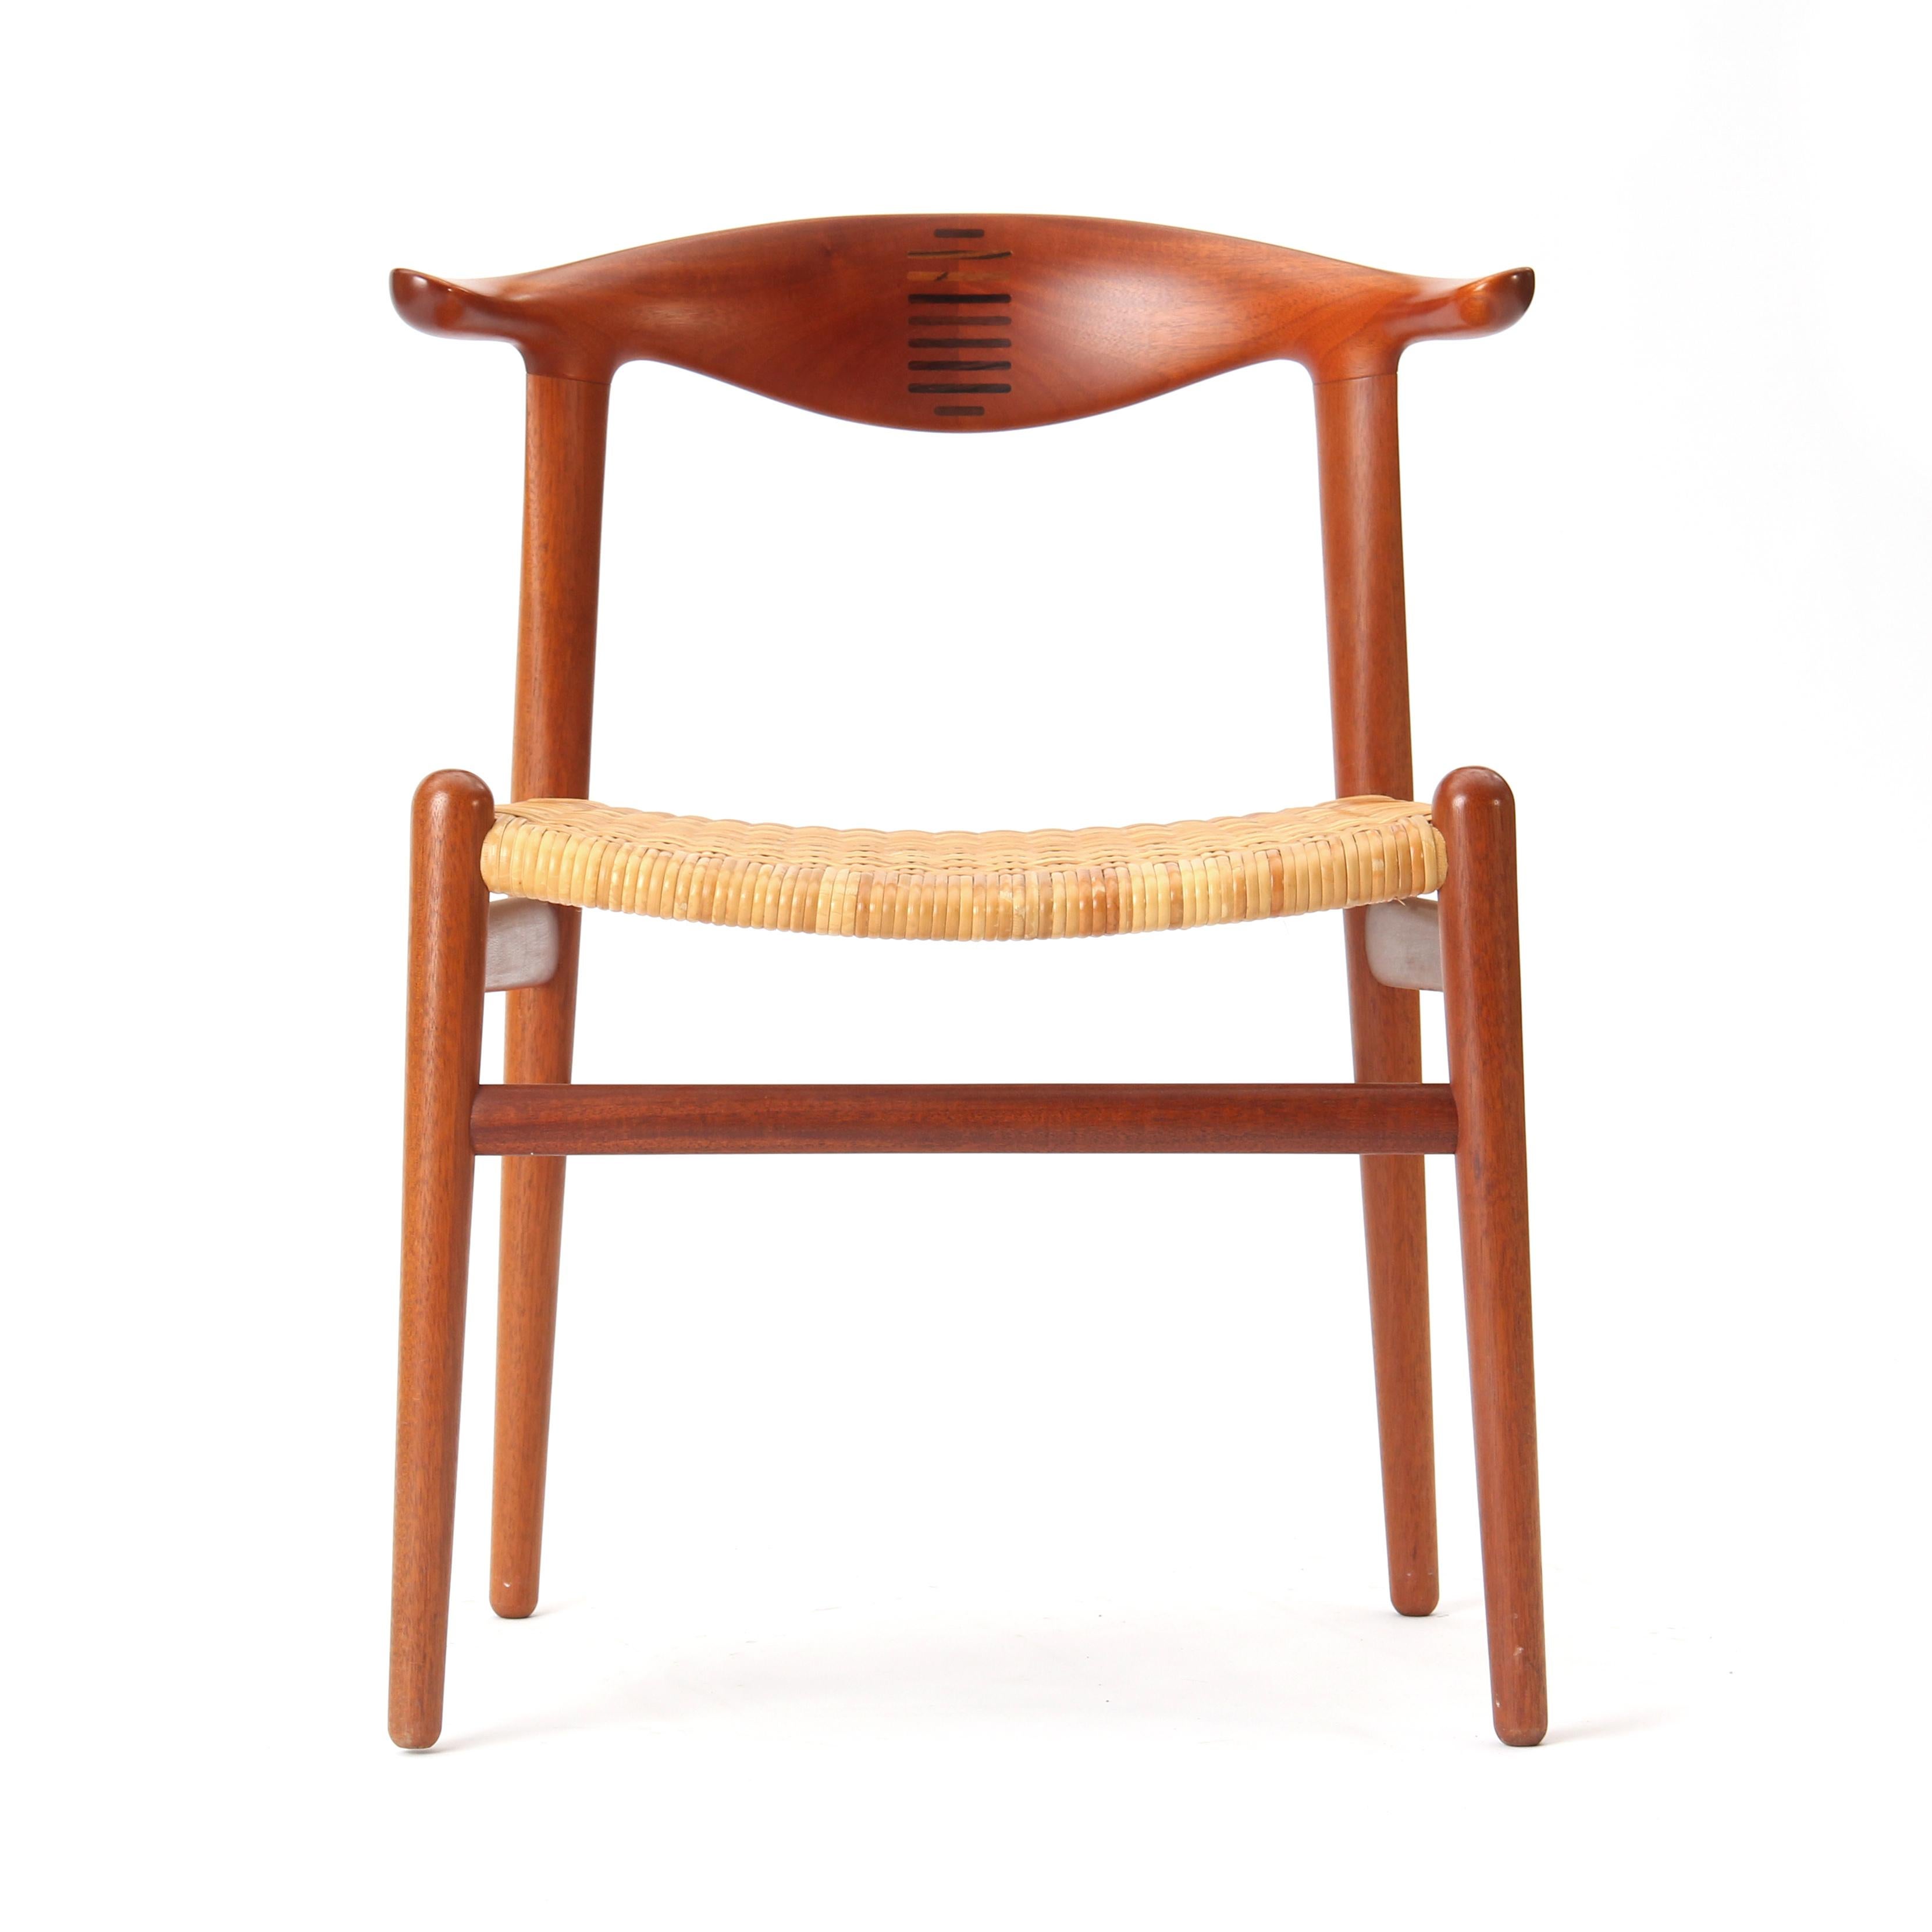 Une rare chaise de salle à manger moderne danoise en teck avec un dossier cannelé et un siège en canne naturelle. Le modèle JH-505 a été conçu en 1952 par Hans J. Wegner et produit dans les années 1960 par Johannes Hansen.